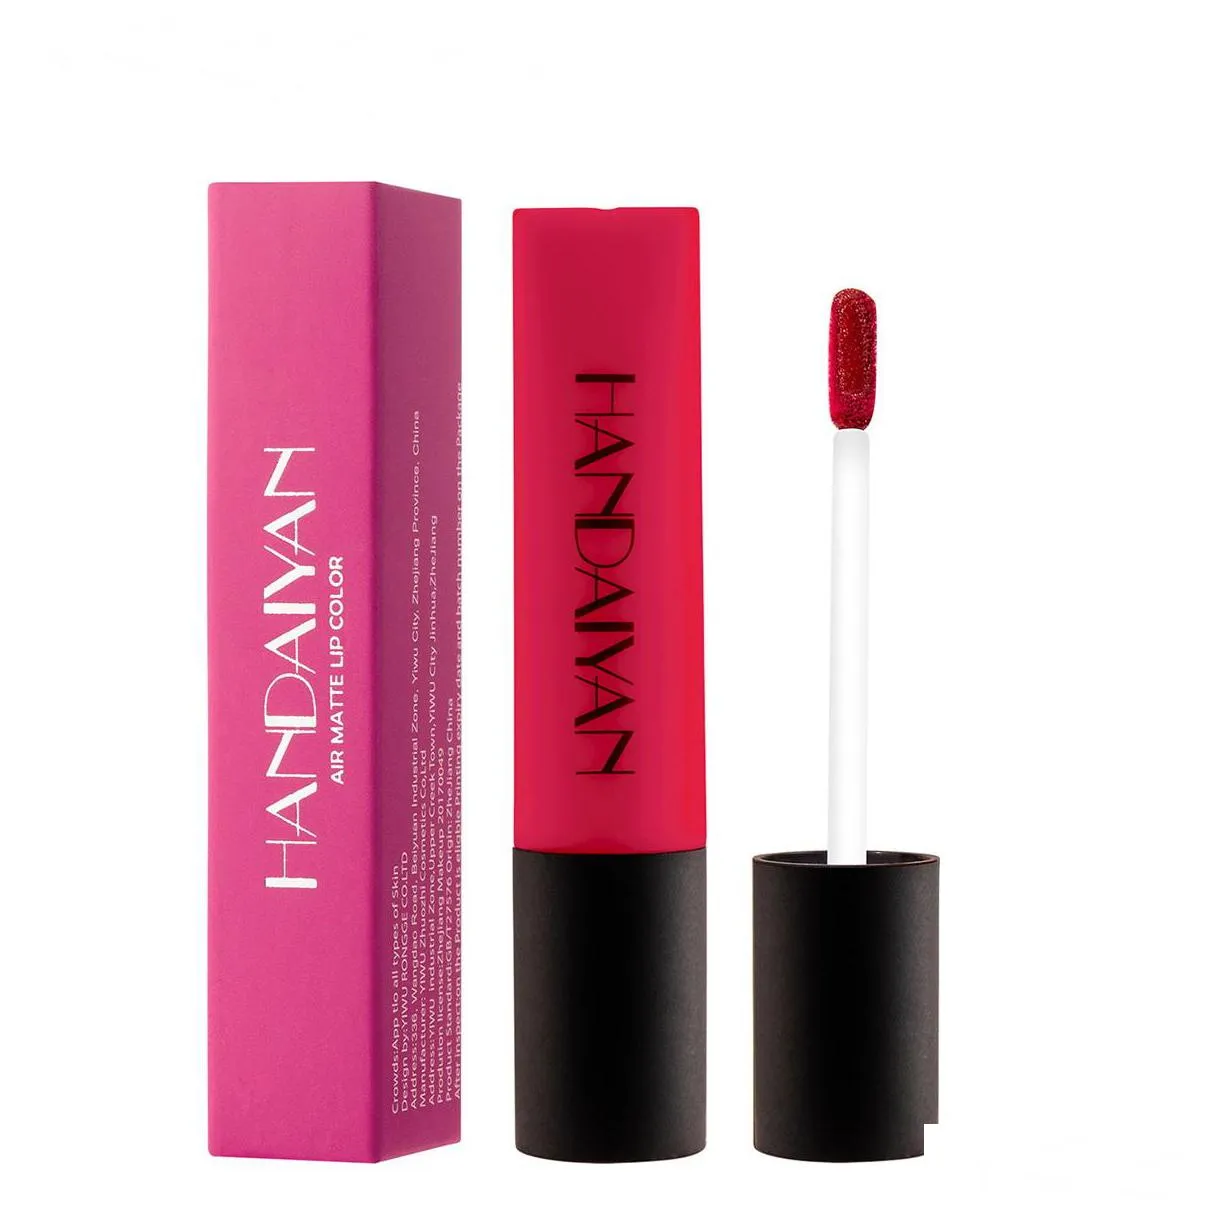 handaiyan matte lip gloss velvet air lips glaze liquid lipstick moisturizer non sticky makeup lipgloss